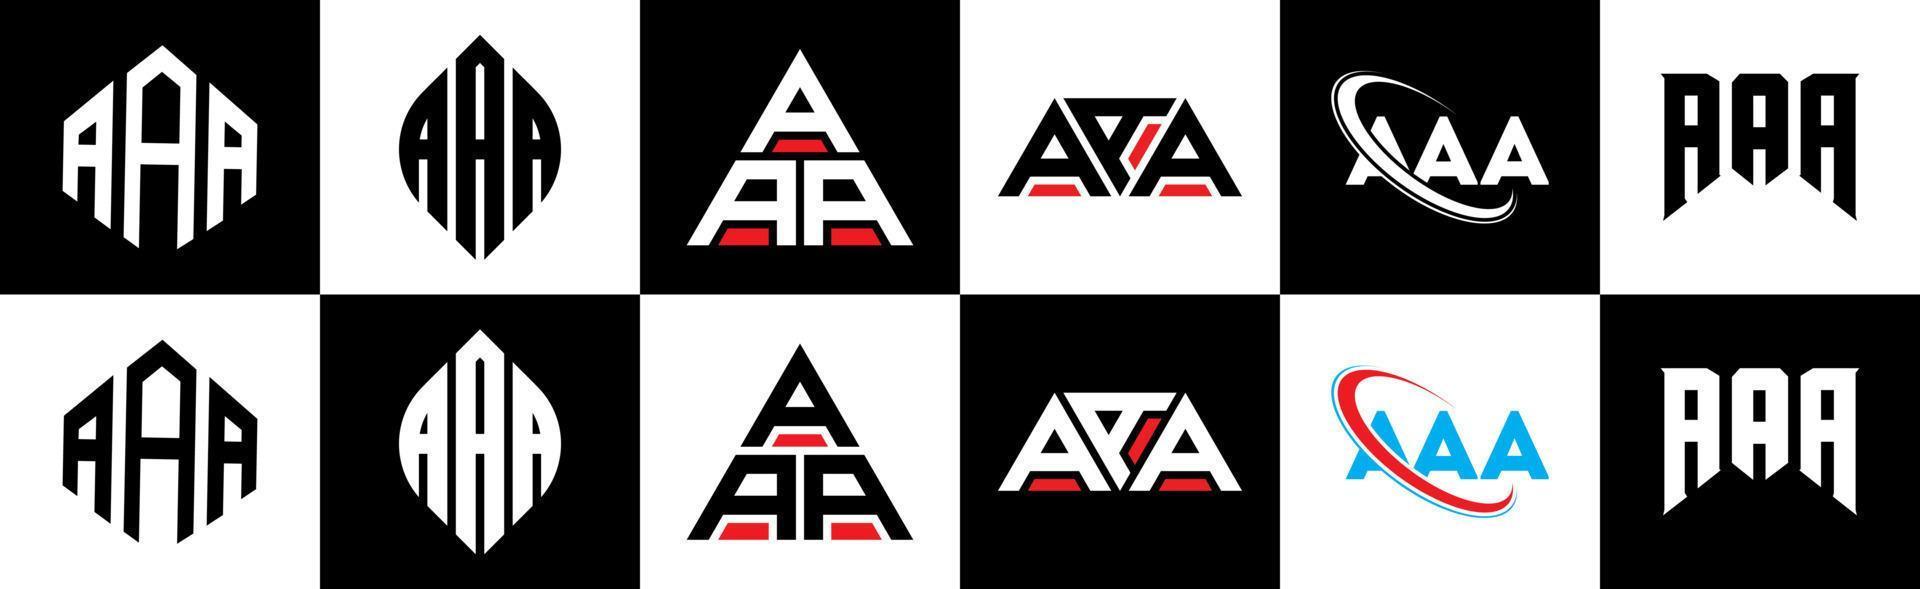 création de logo de lettre aaa en six styles. aaa polygone, cercle, triangle, hexagone, style plat et simple avec logo de lettre de variation de couleur noir et blanc dans un plan de travail. aaa logo minimaliste et classique vecteur